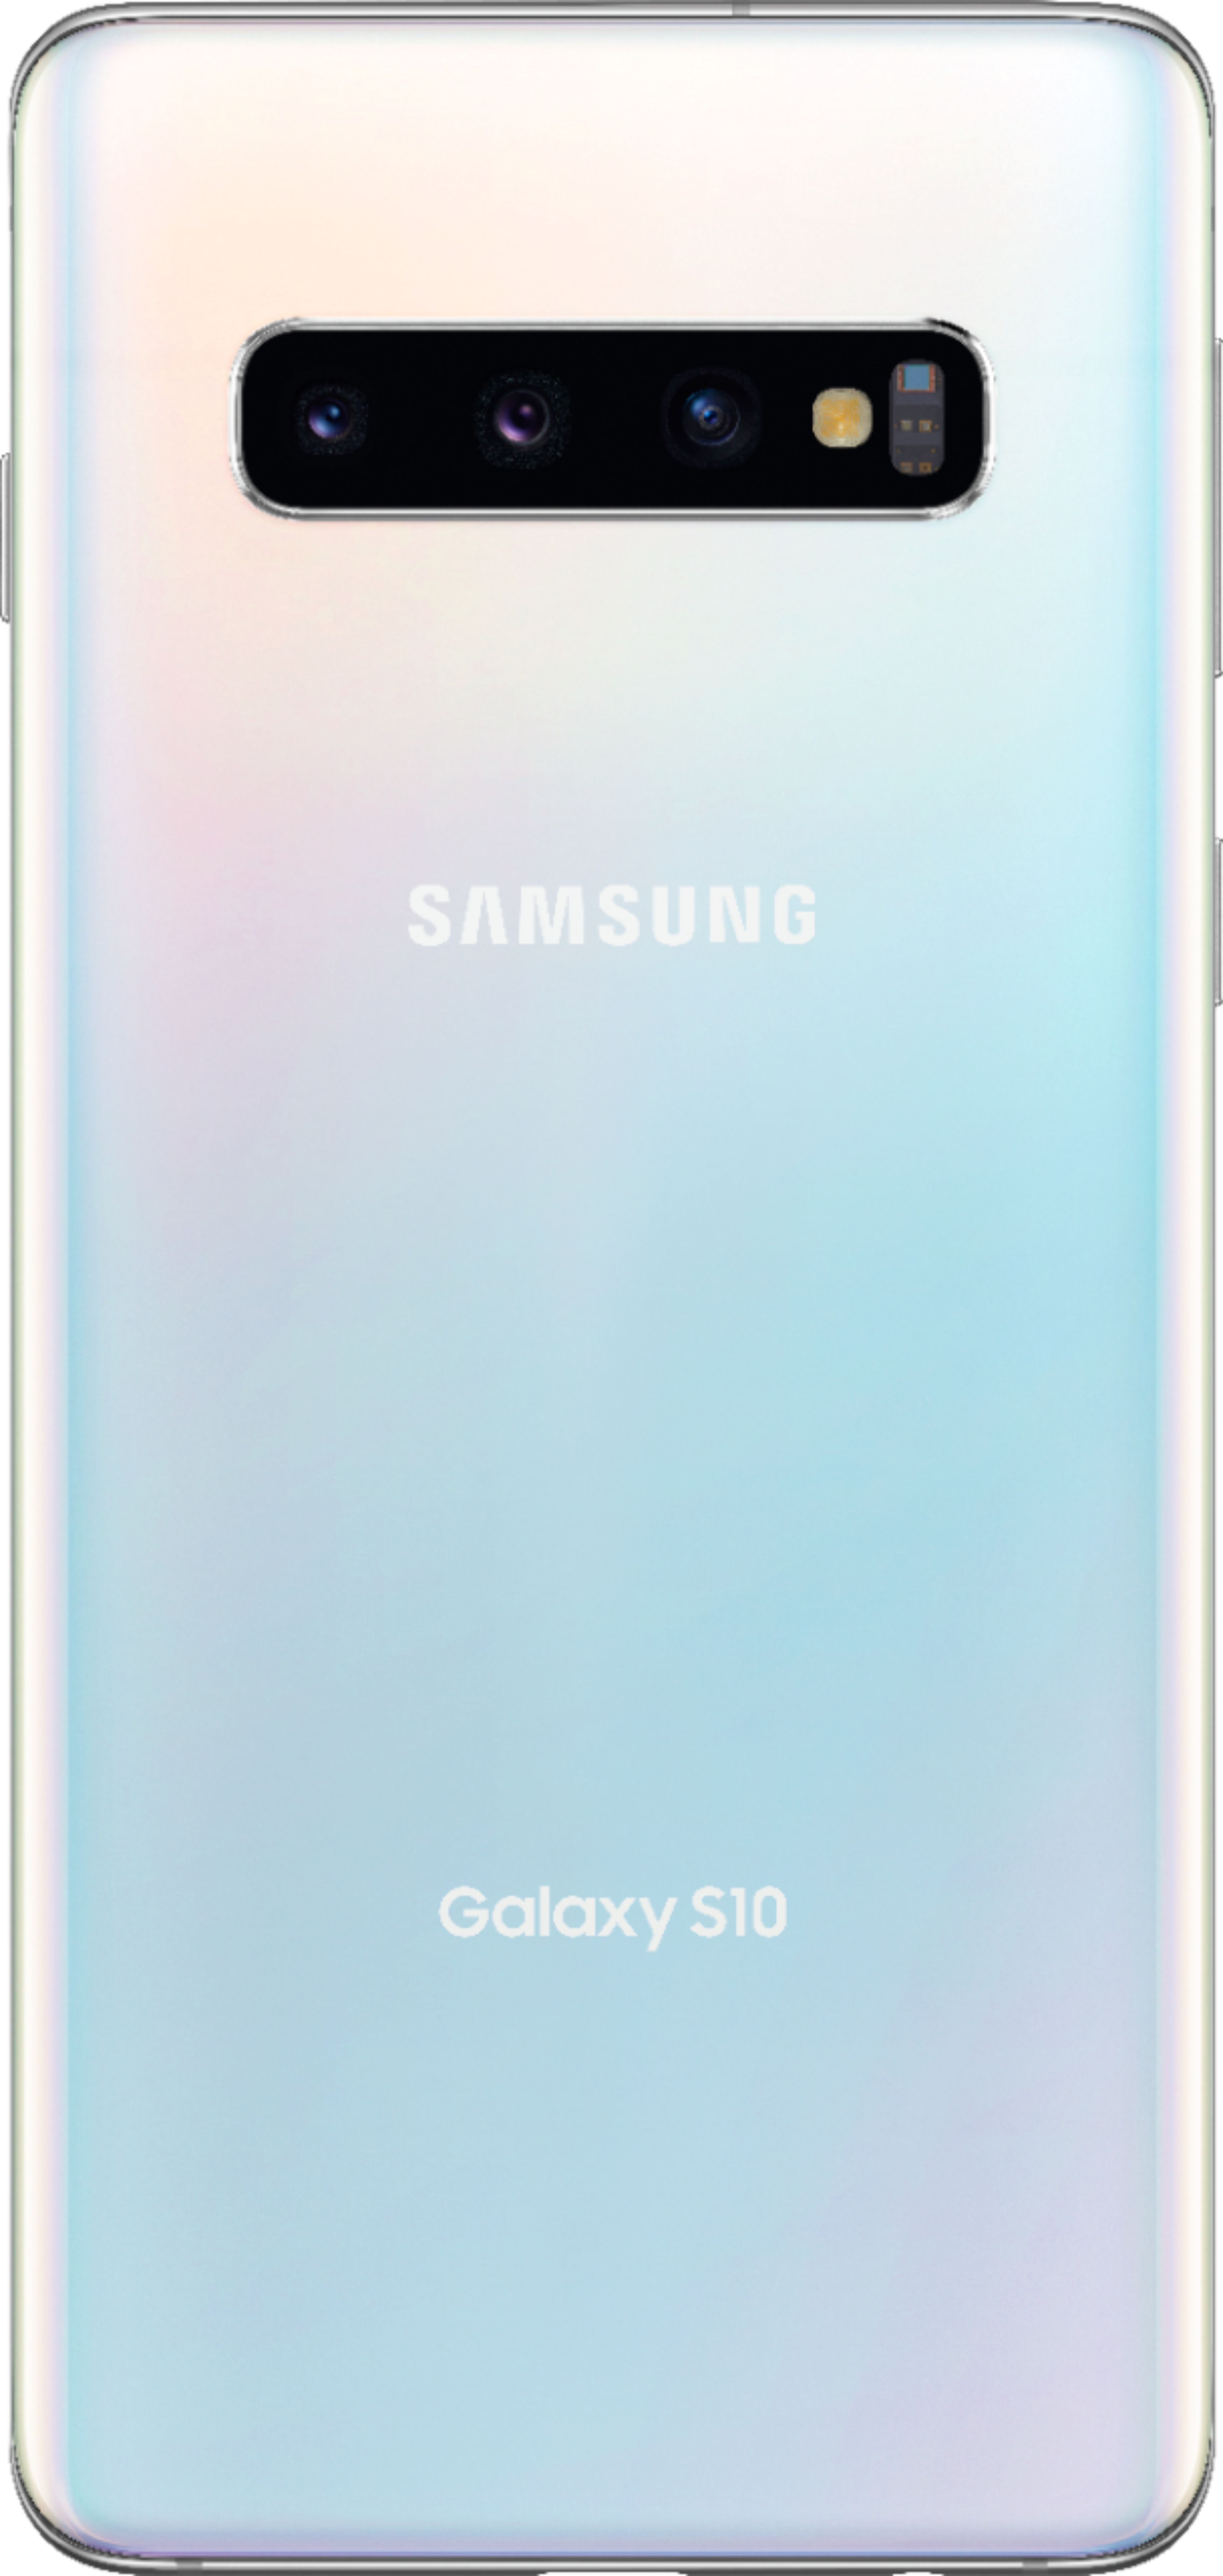 スマートフォン/携帯電話 スマートフォン本体 Galaxy S10 Prism White ☆ docomo | www.myglobaltax.com